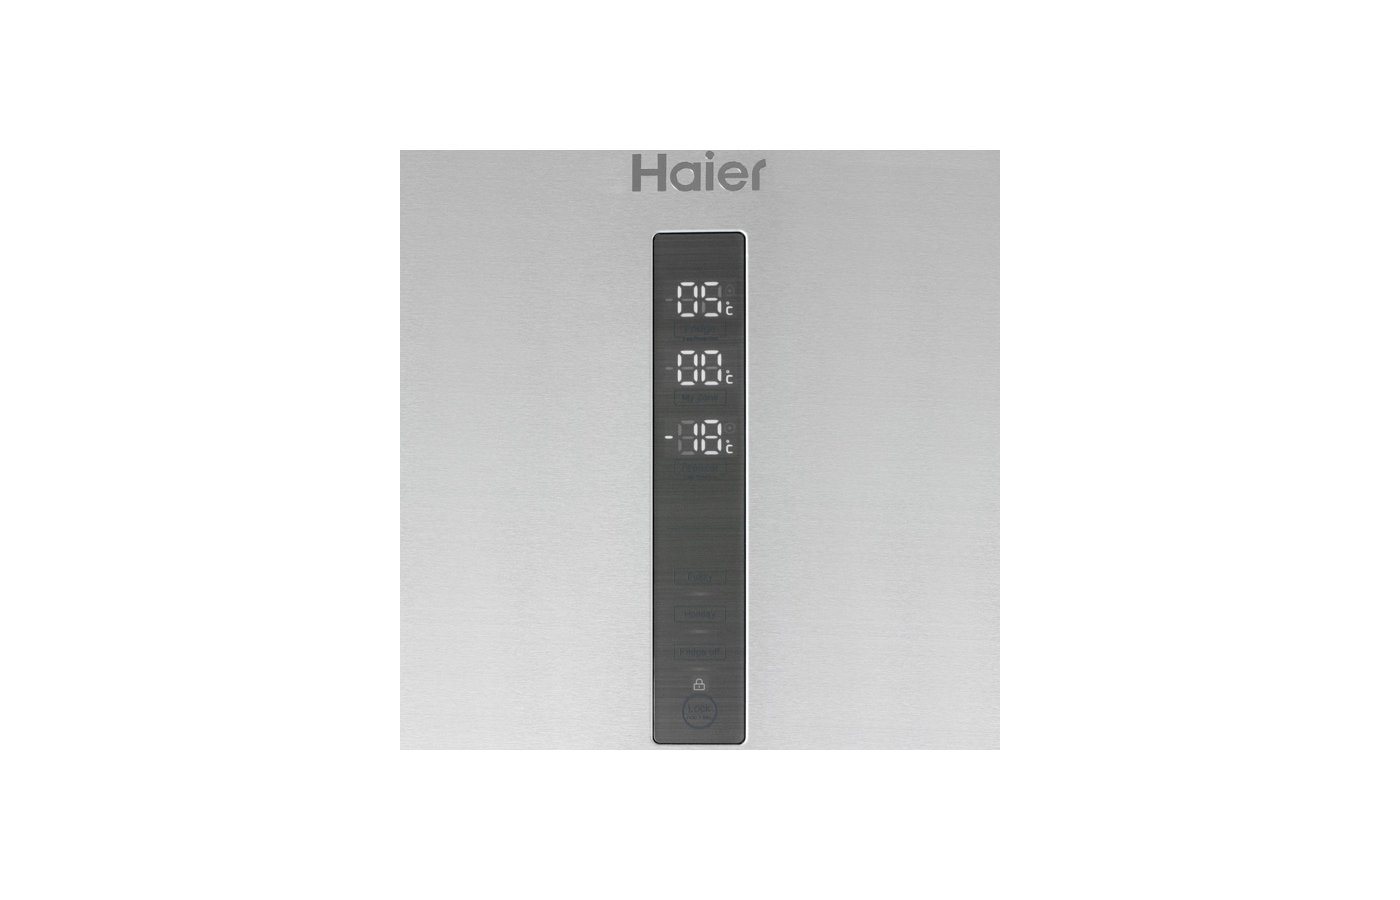 Повтор экрана на haier. Холодильник Haier a3fe742cmjru. Холодильник Haier cef535asg. Холодильник Haier a4f639cxmvu1. Холодильник Haier c4f640cwu1 панель управления.